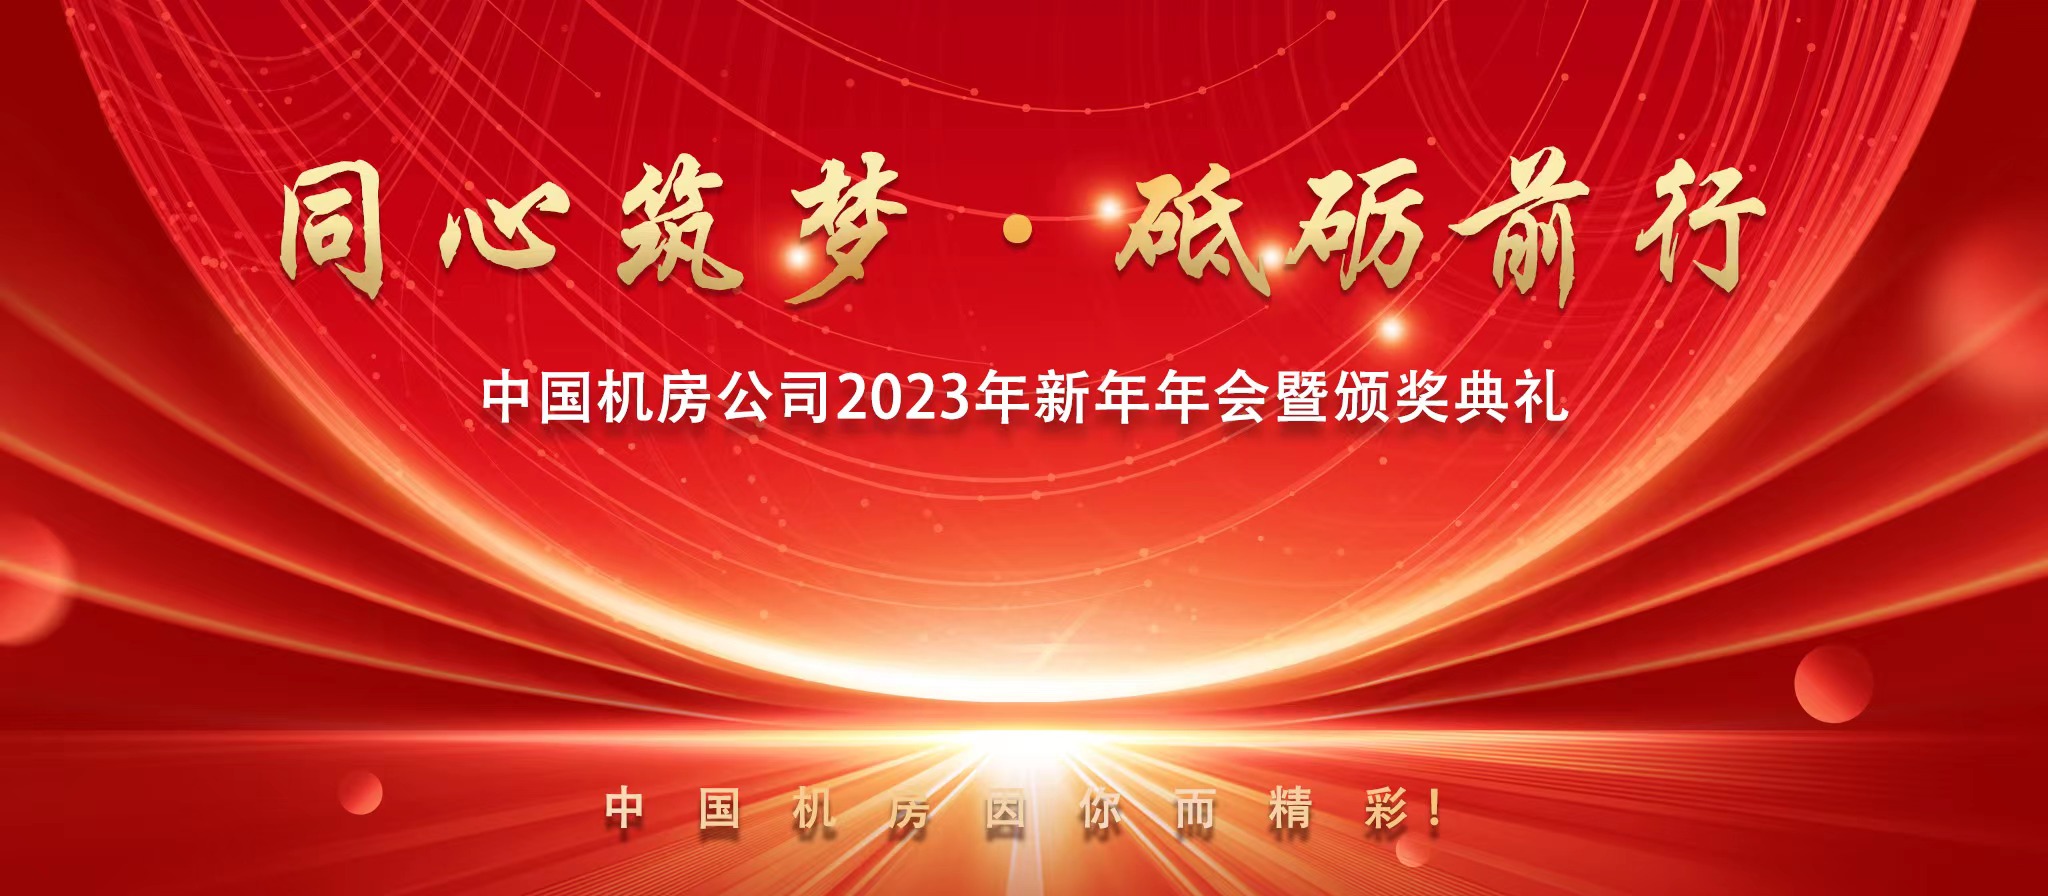 中国机房公司2023年新年年会暨颁奖典礼圆满举行